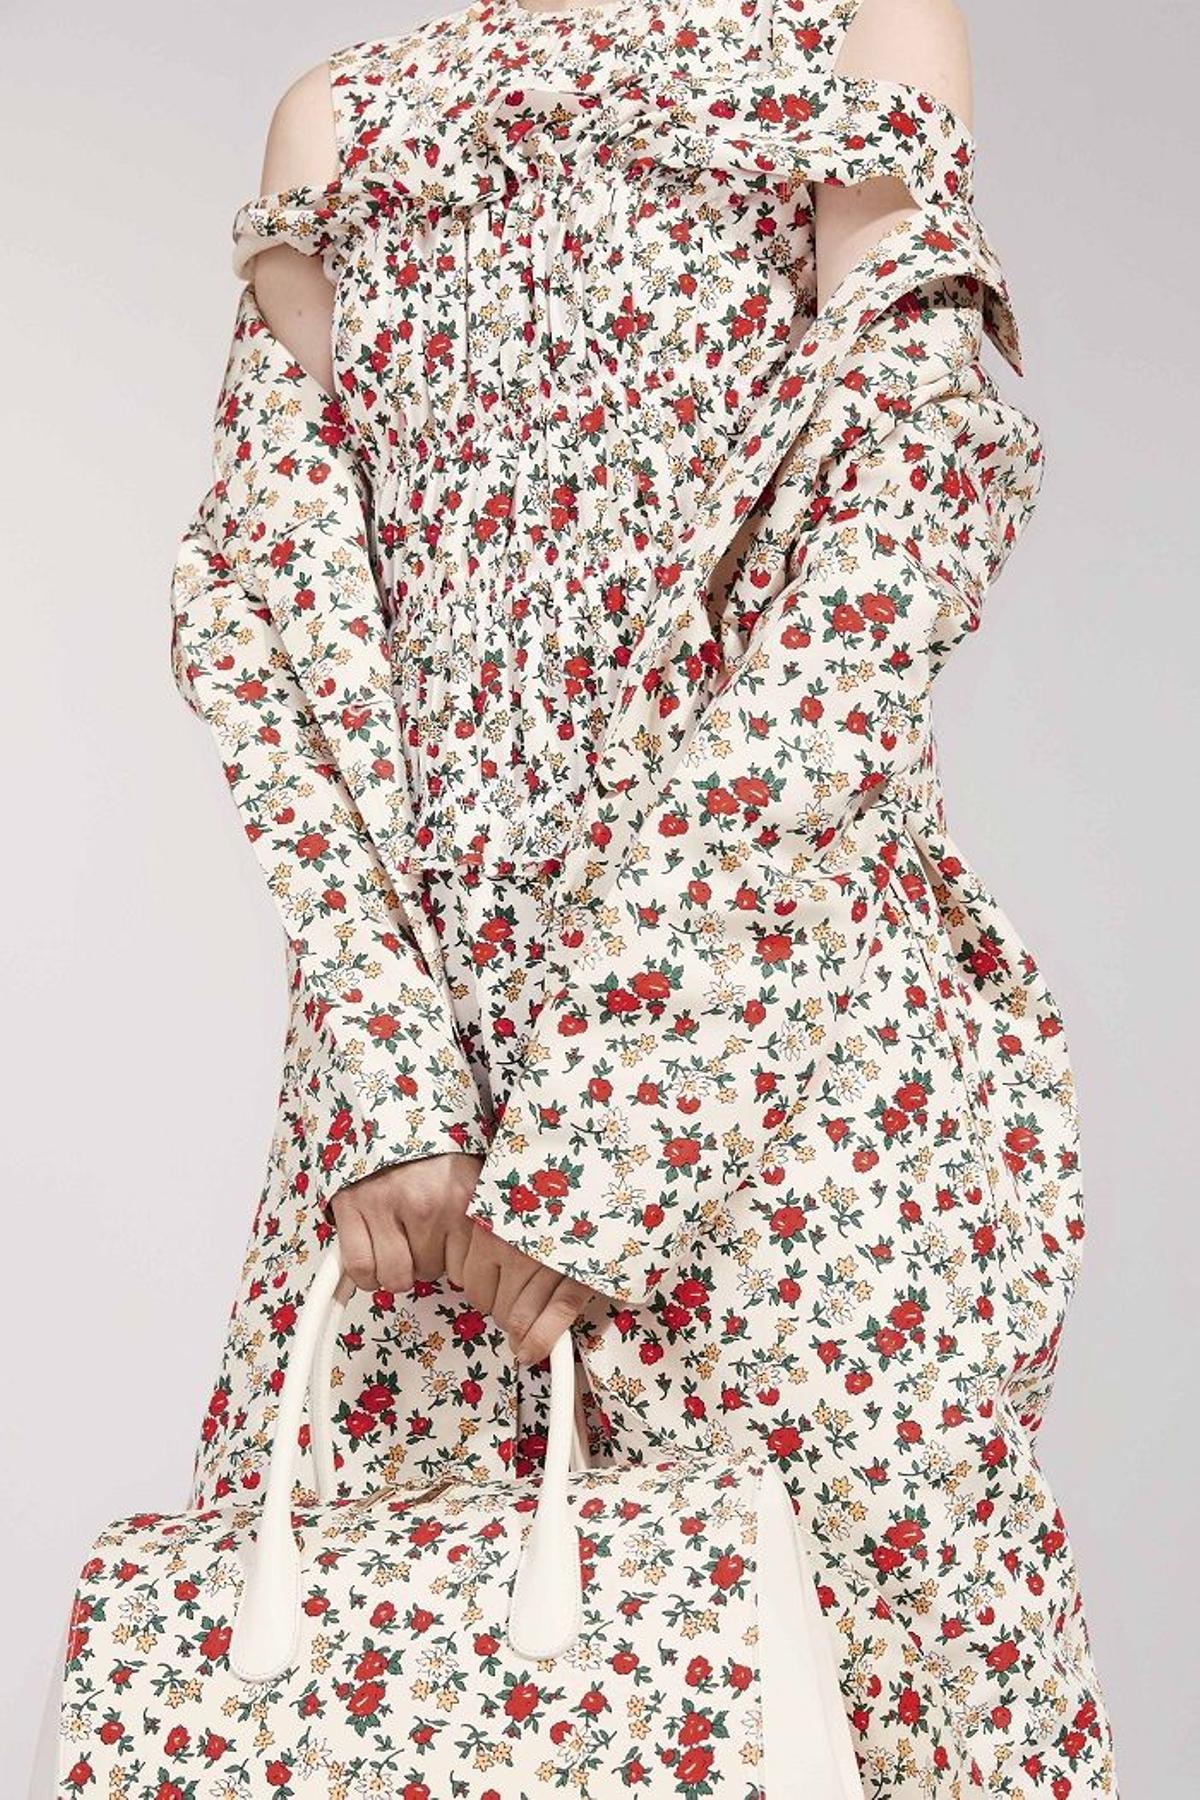 Nina Ricci colección primavera 2016, vestido de flores